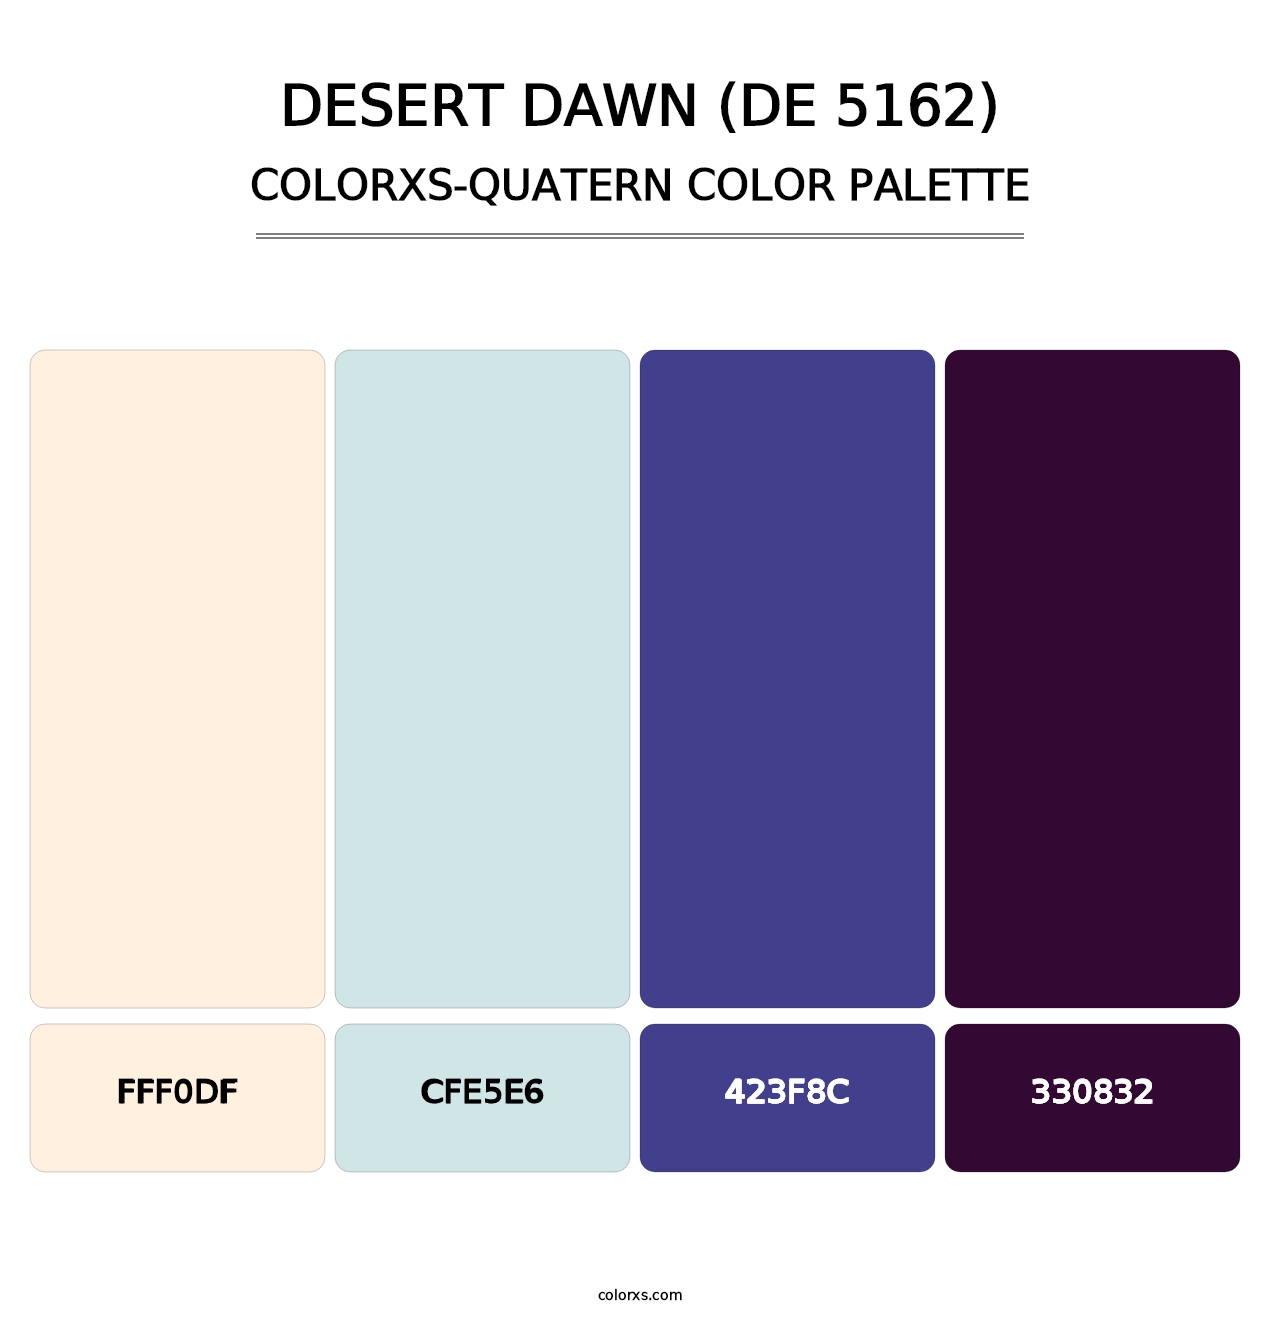 Desert Dawn (DE 5162) - Colorxs Quatern Palette